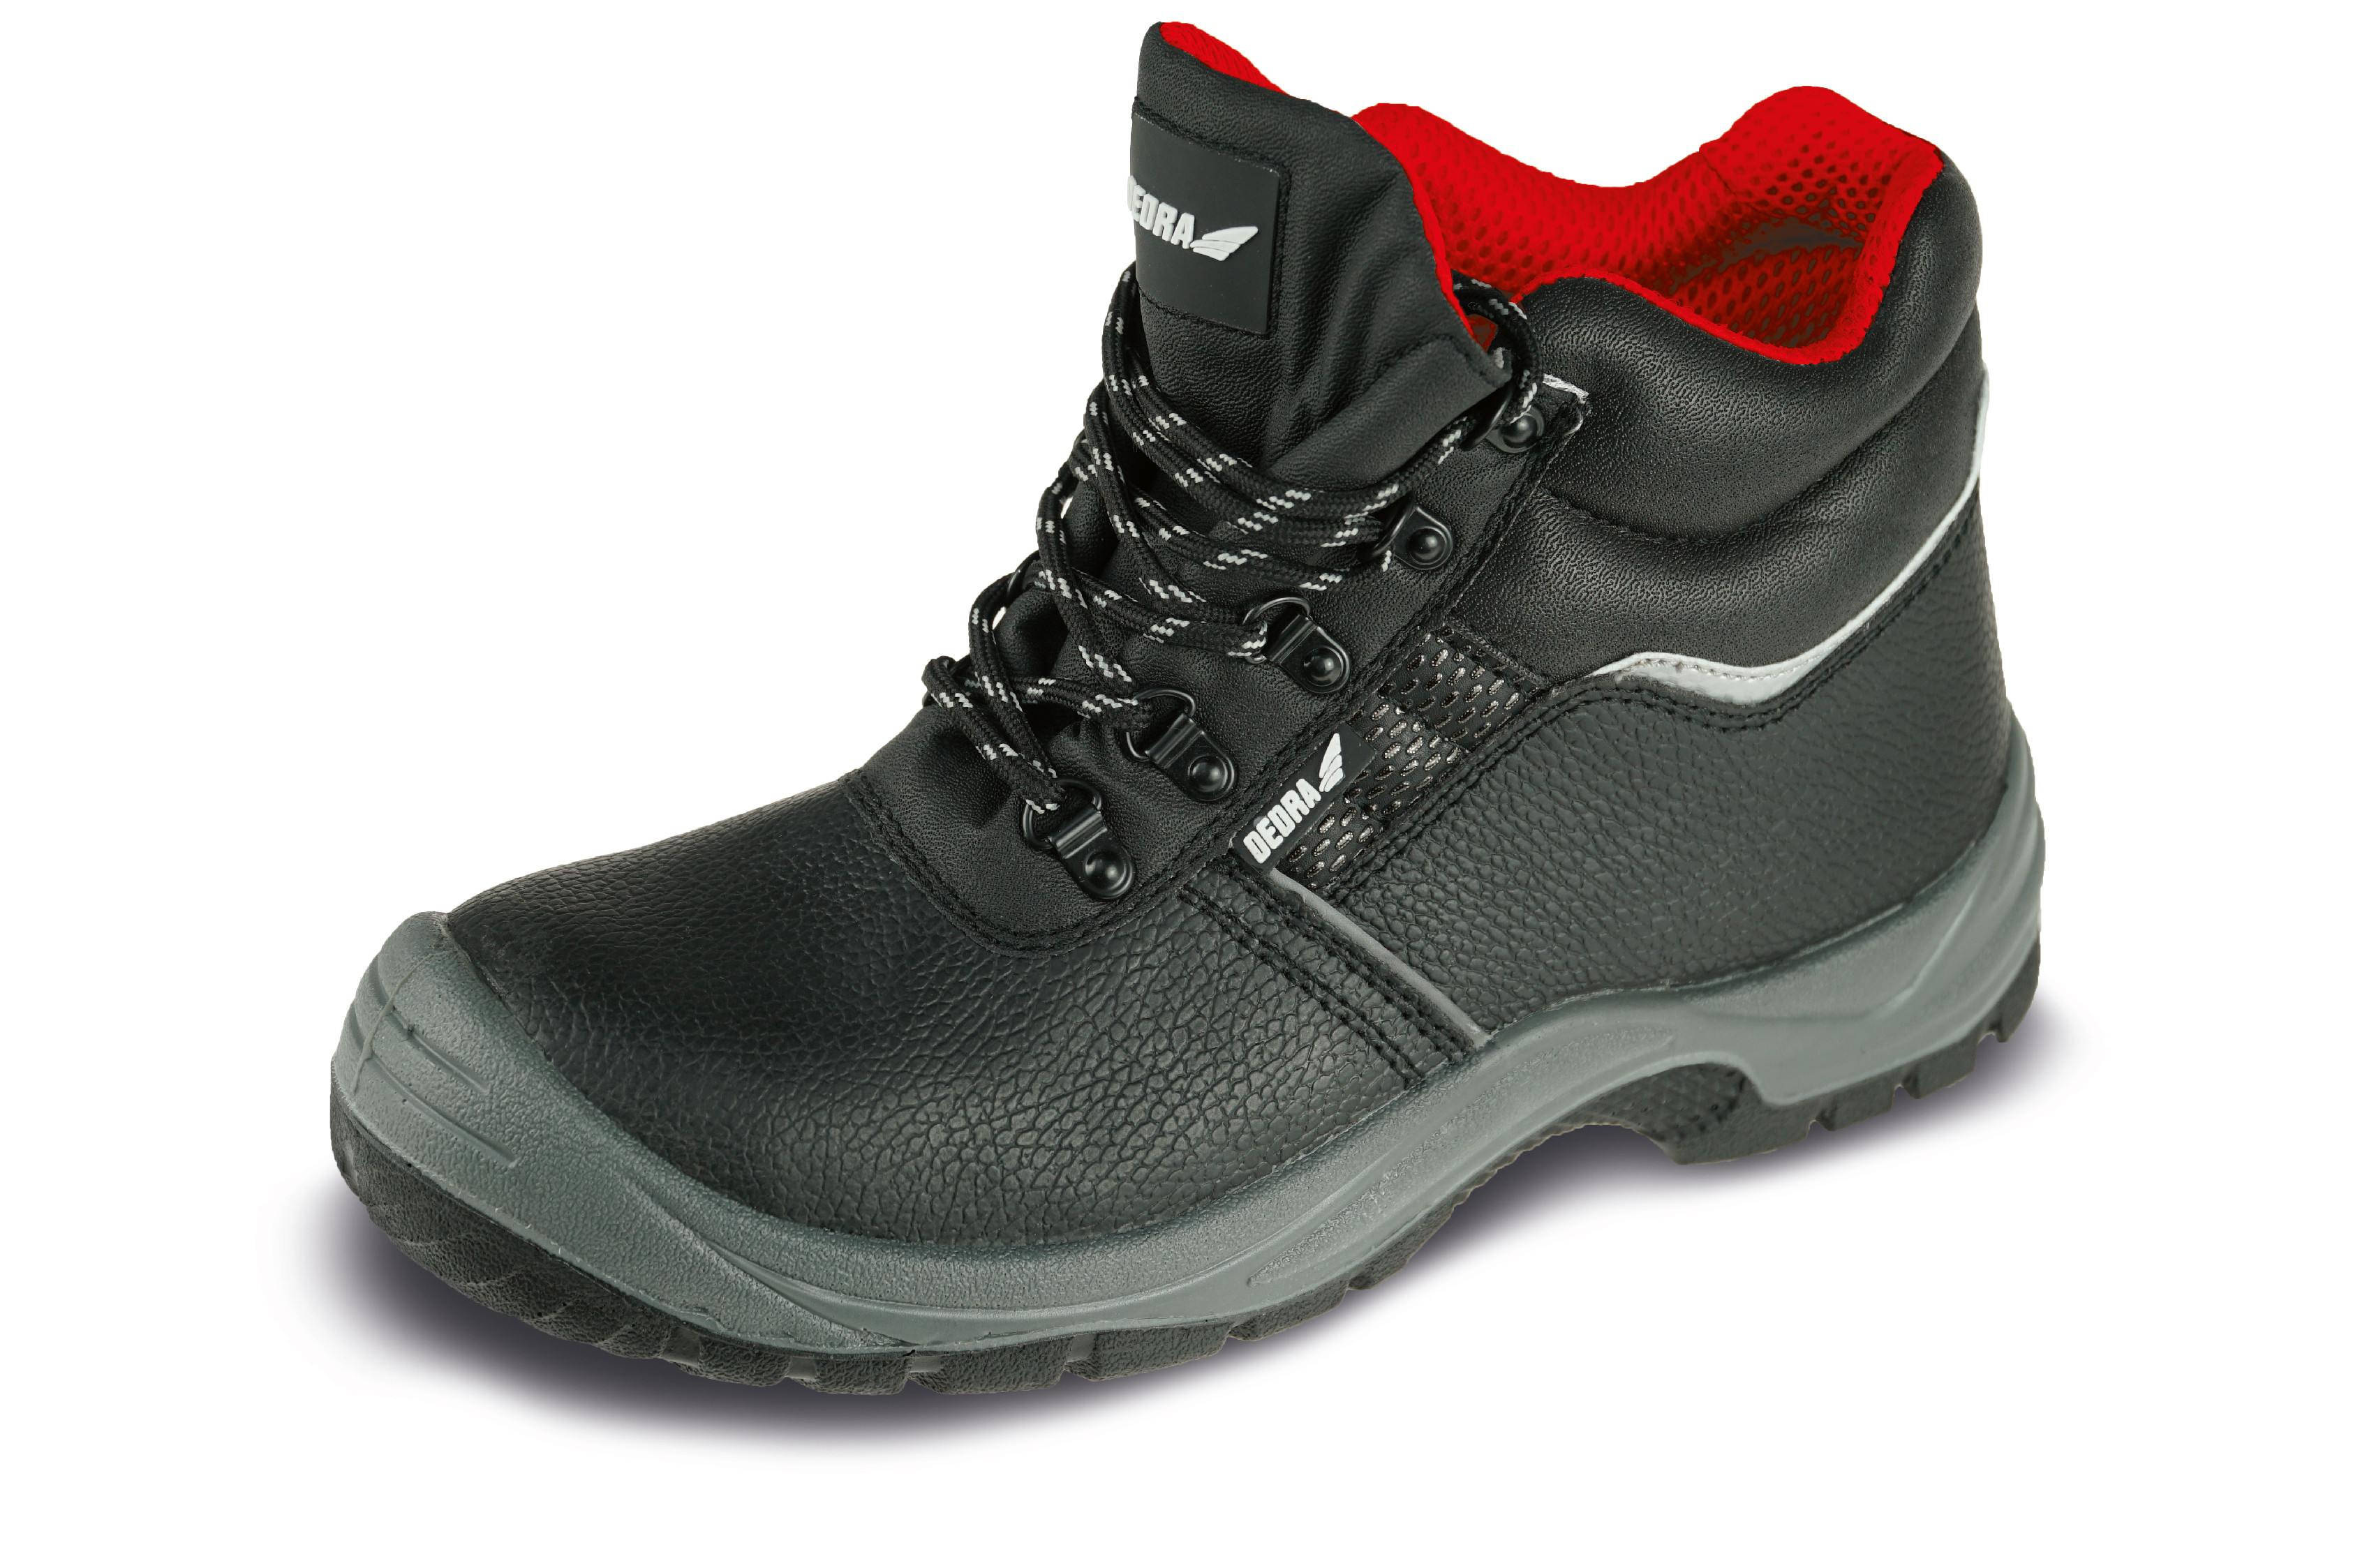 Bezpečnostní boty T1AW, kožené, velikost: 46, kat. S3 SRC DEDRA BH9T1AW-46 + Dárek, servis bez starostí v hodnotě 300Kč